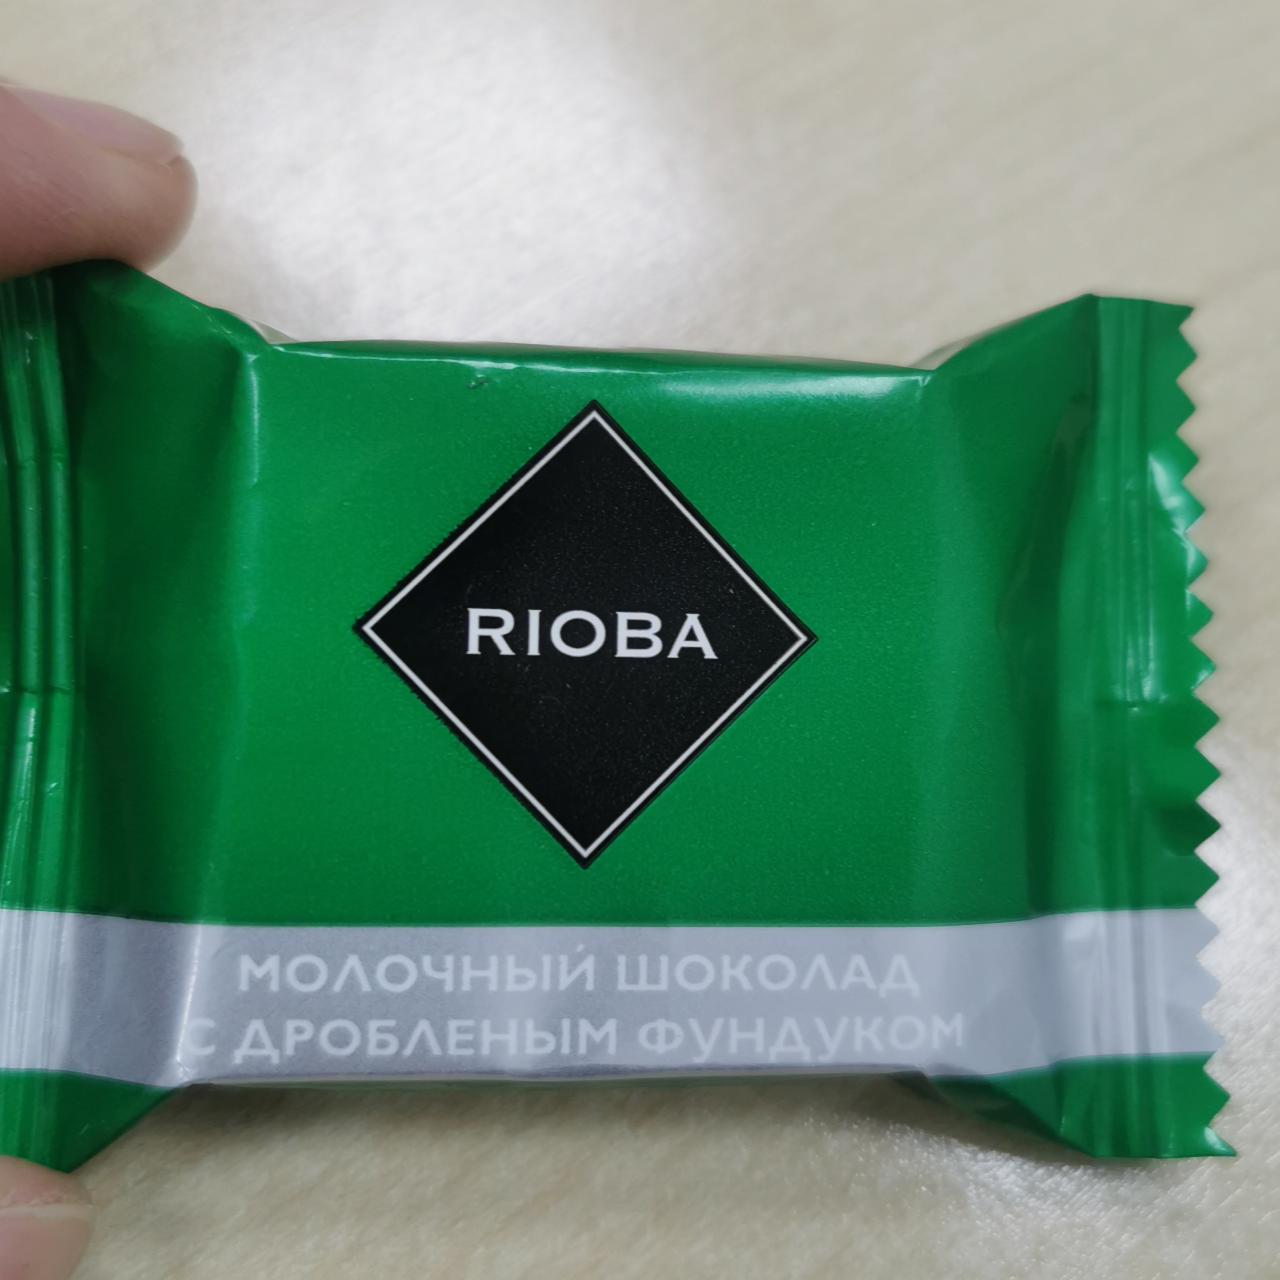 Фото - Молочный шоколад с дробленым фундуком Rioba